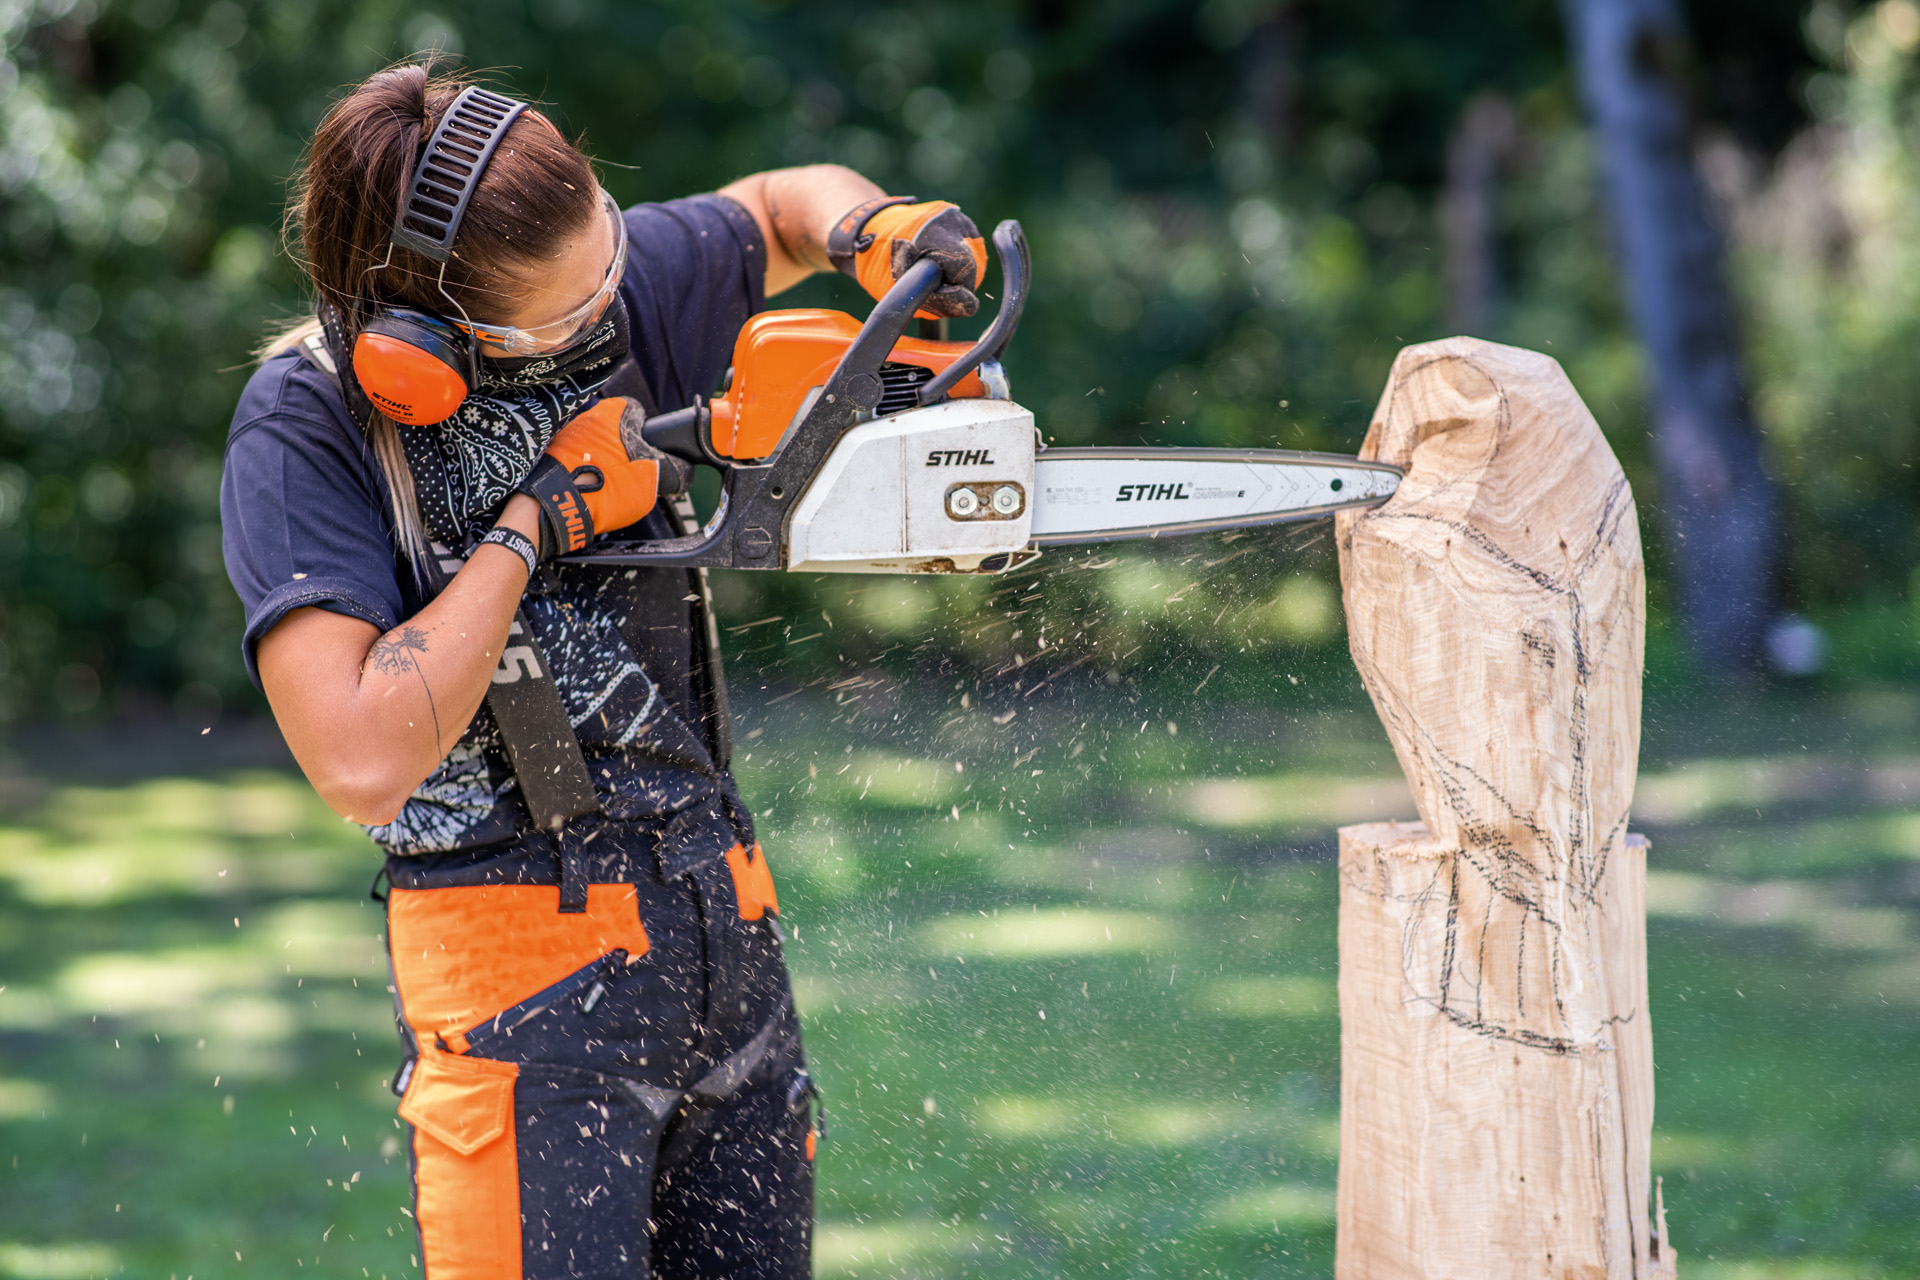 Mujer con equipamiento de protección tallando un búho de madera con una motosierra.